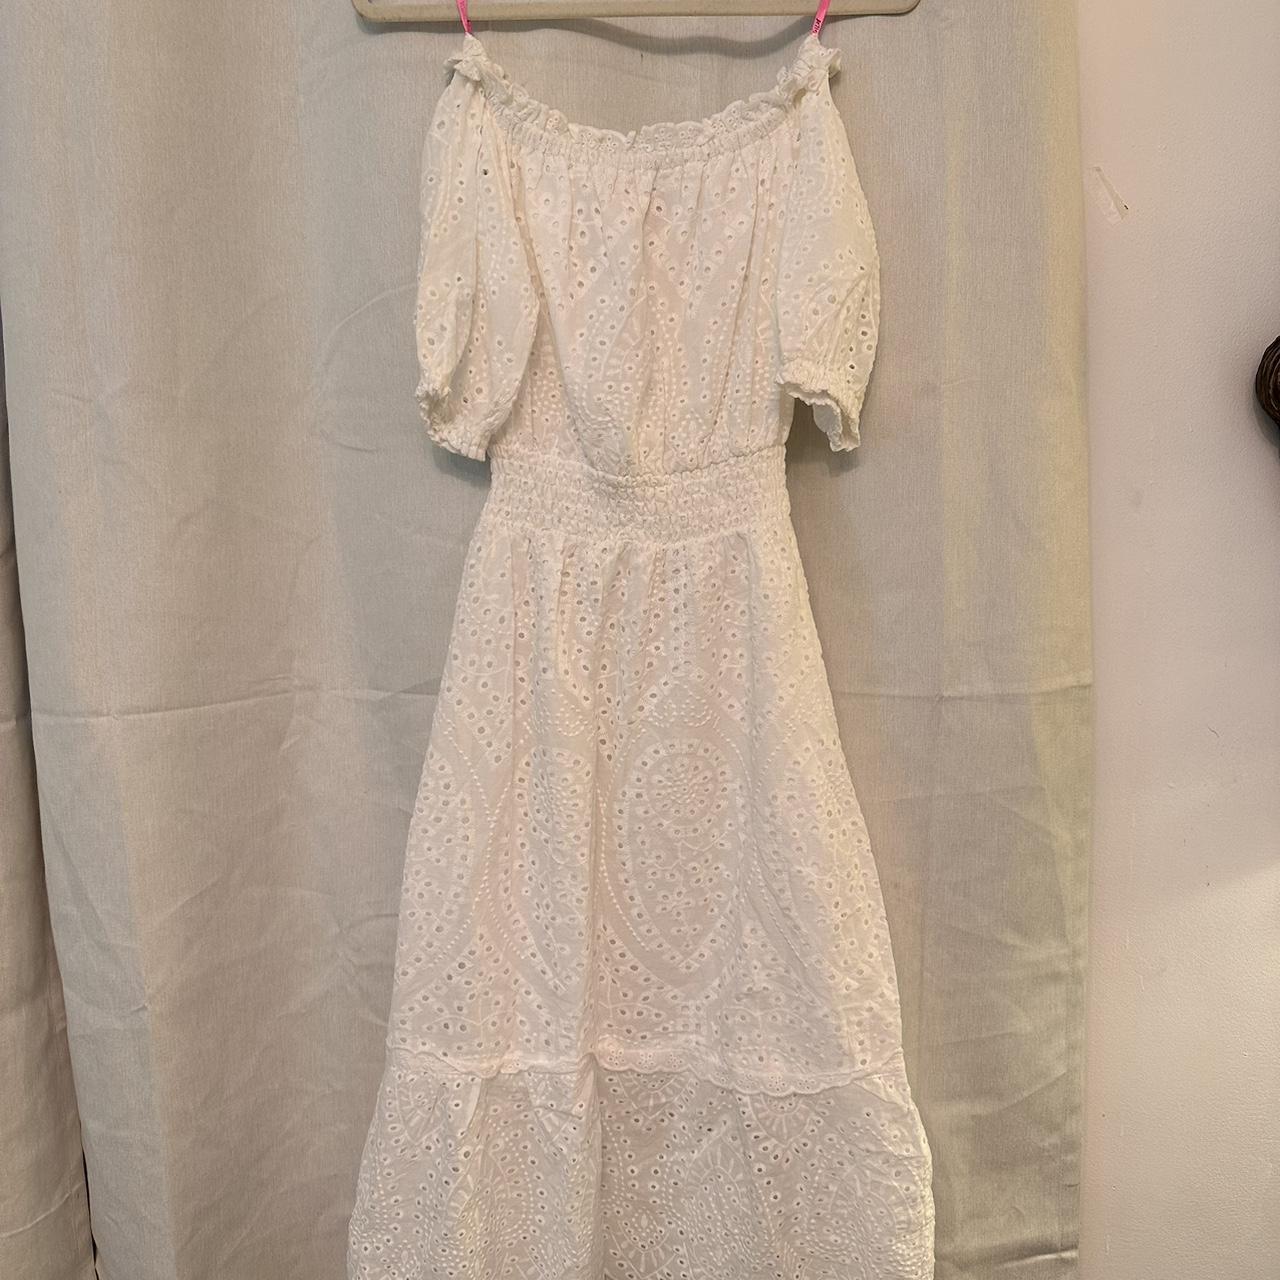 Betsey Johnson Women's White Dress | Depop